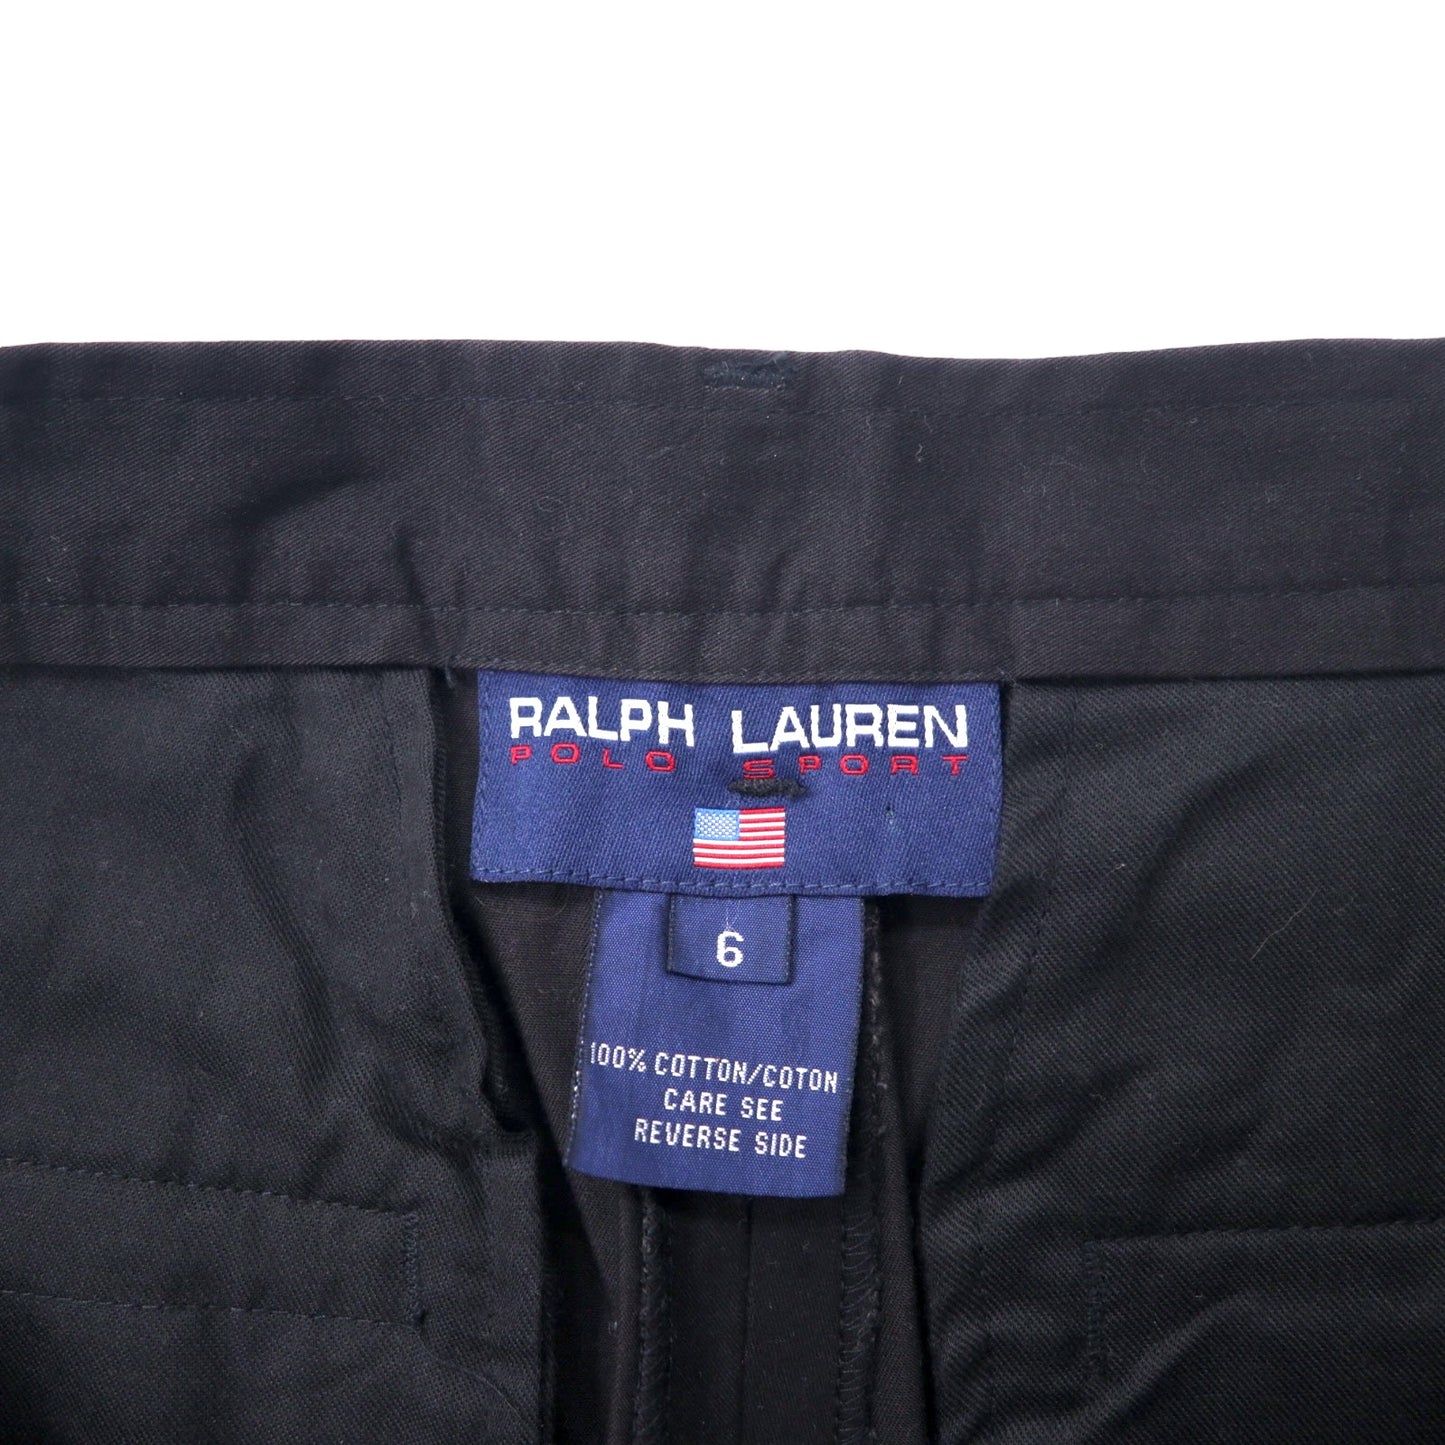 POLO SPORT RALPH LAUREN 90年代 2タック ワイド スラックスパンツ 6 ブラック コットン